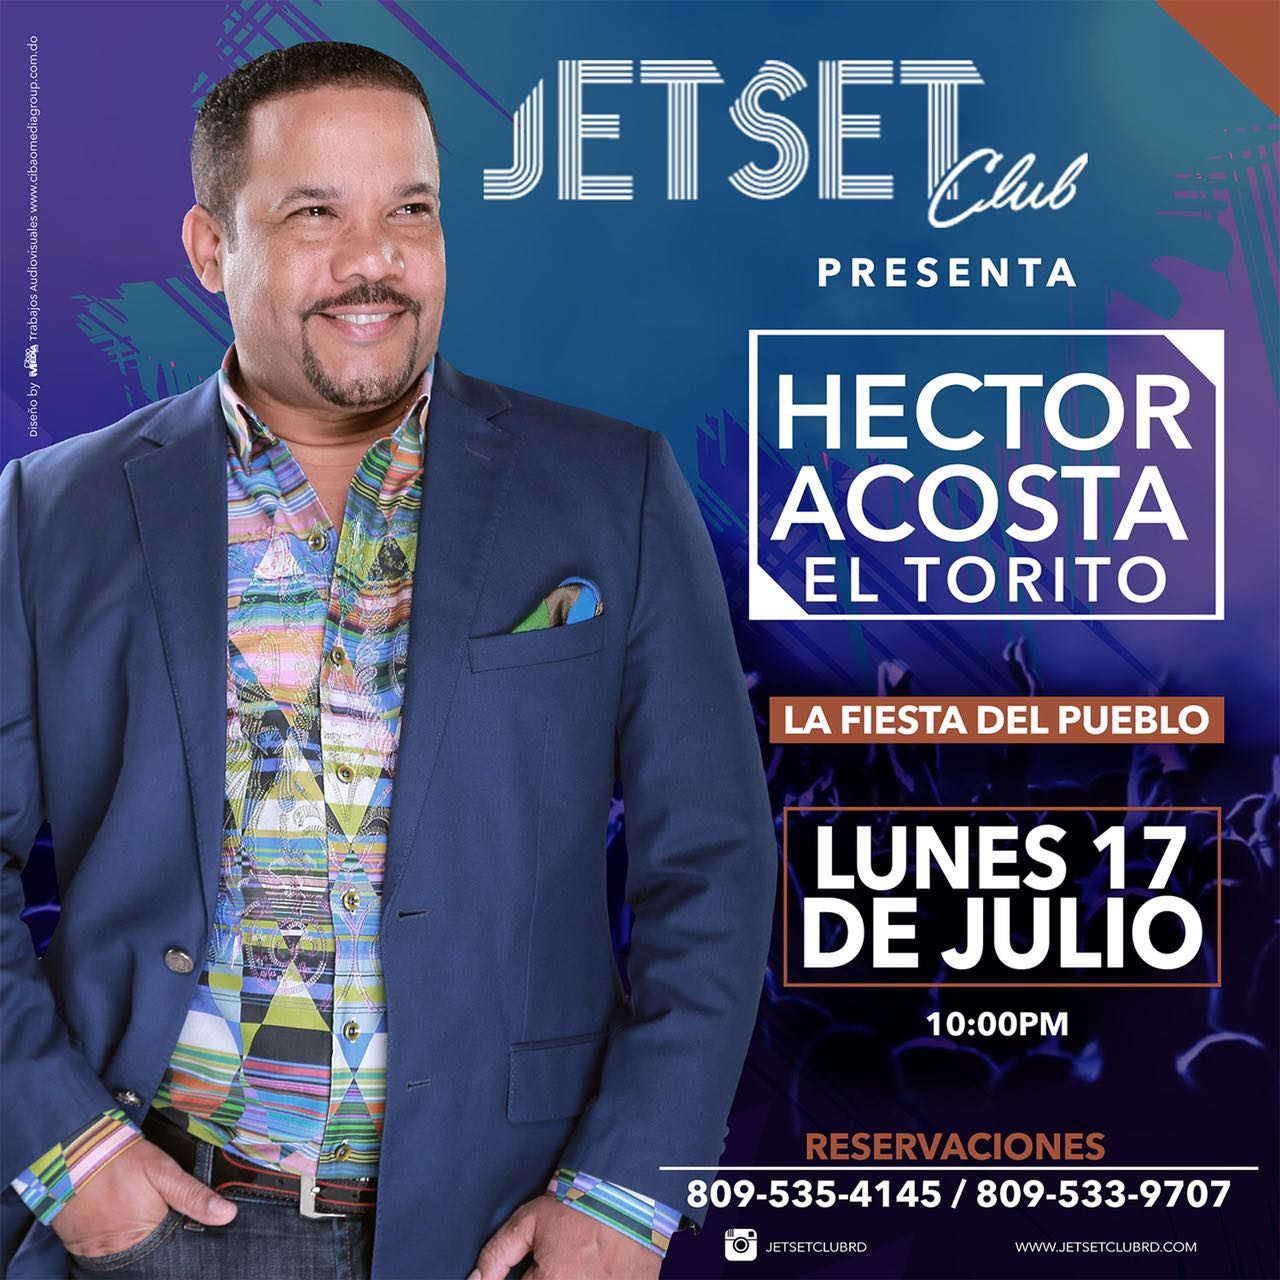 Lunes 17 De Julio Hector Acosta “El Torito” En Jetset Club